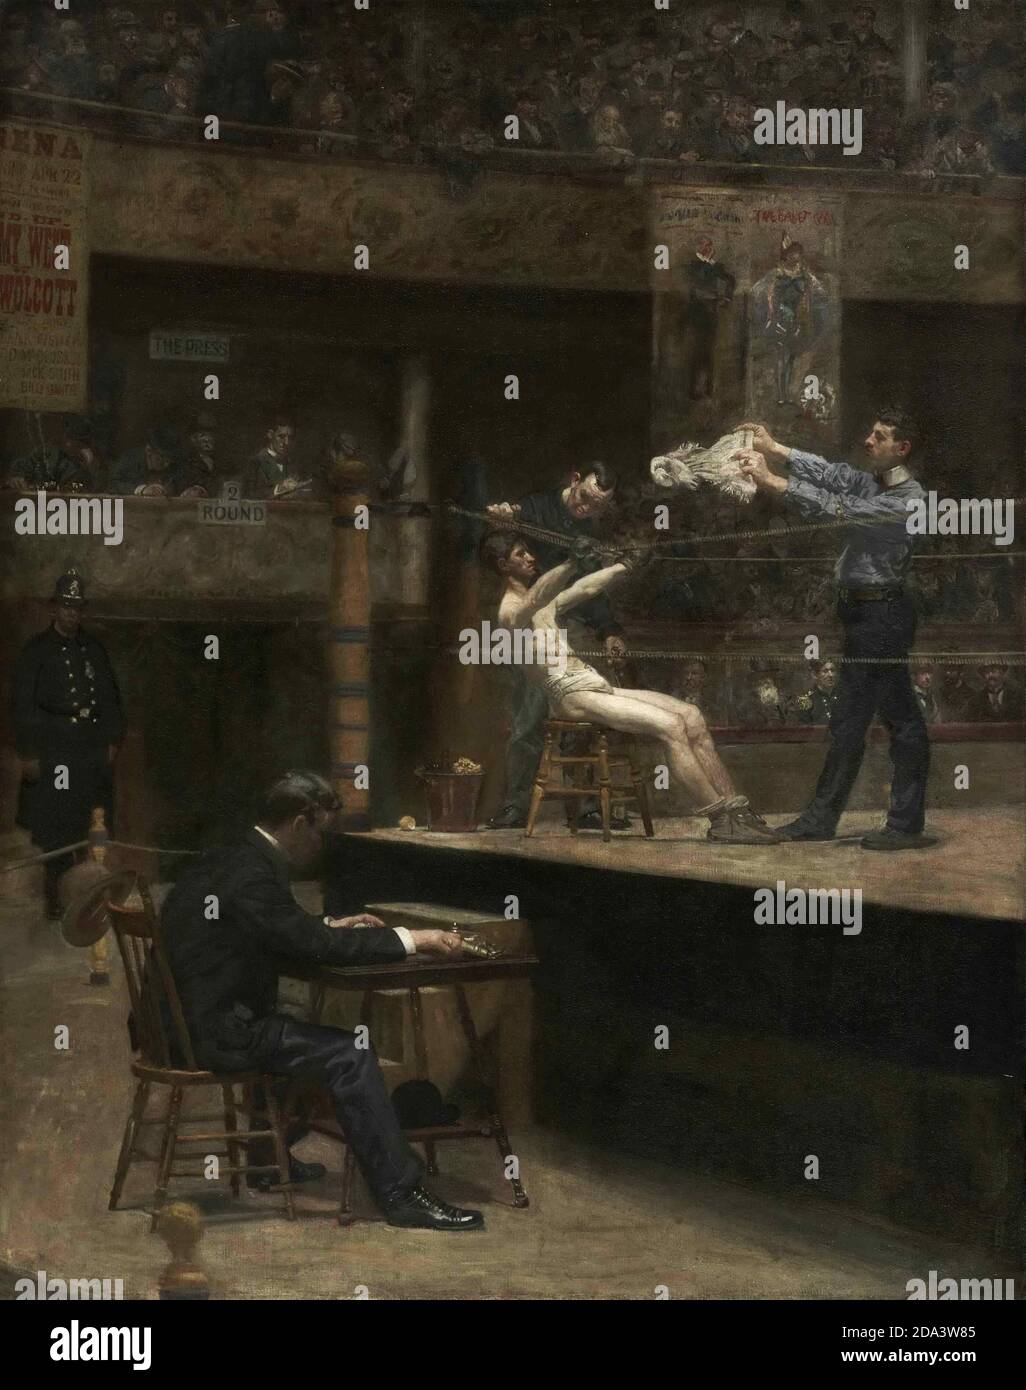 Boxe, peinture à l'huile, Thomas Eakins, américain, 1844-1916 – entre les parties Banque D'Images